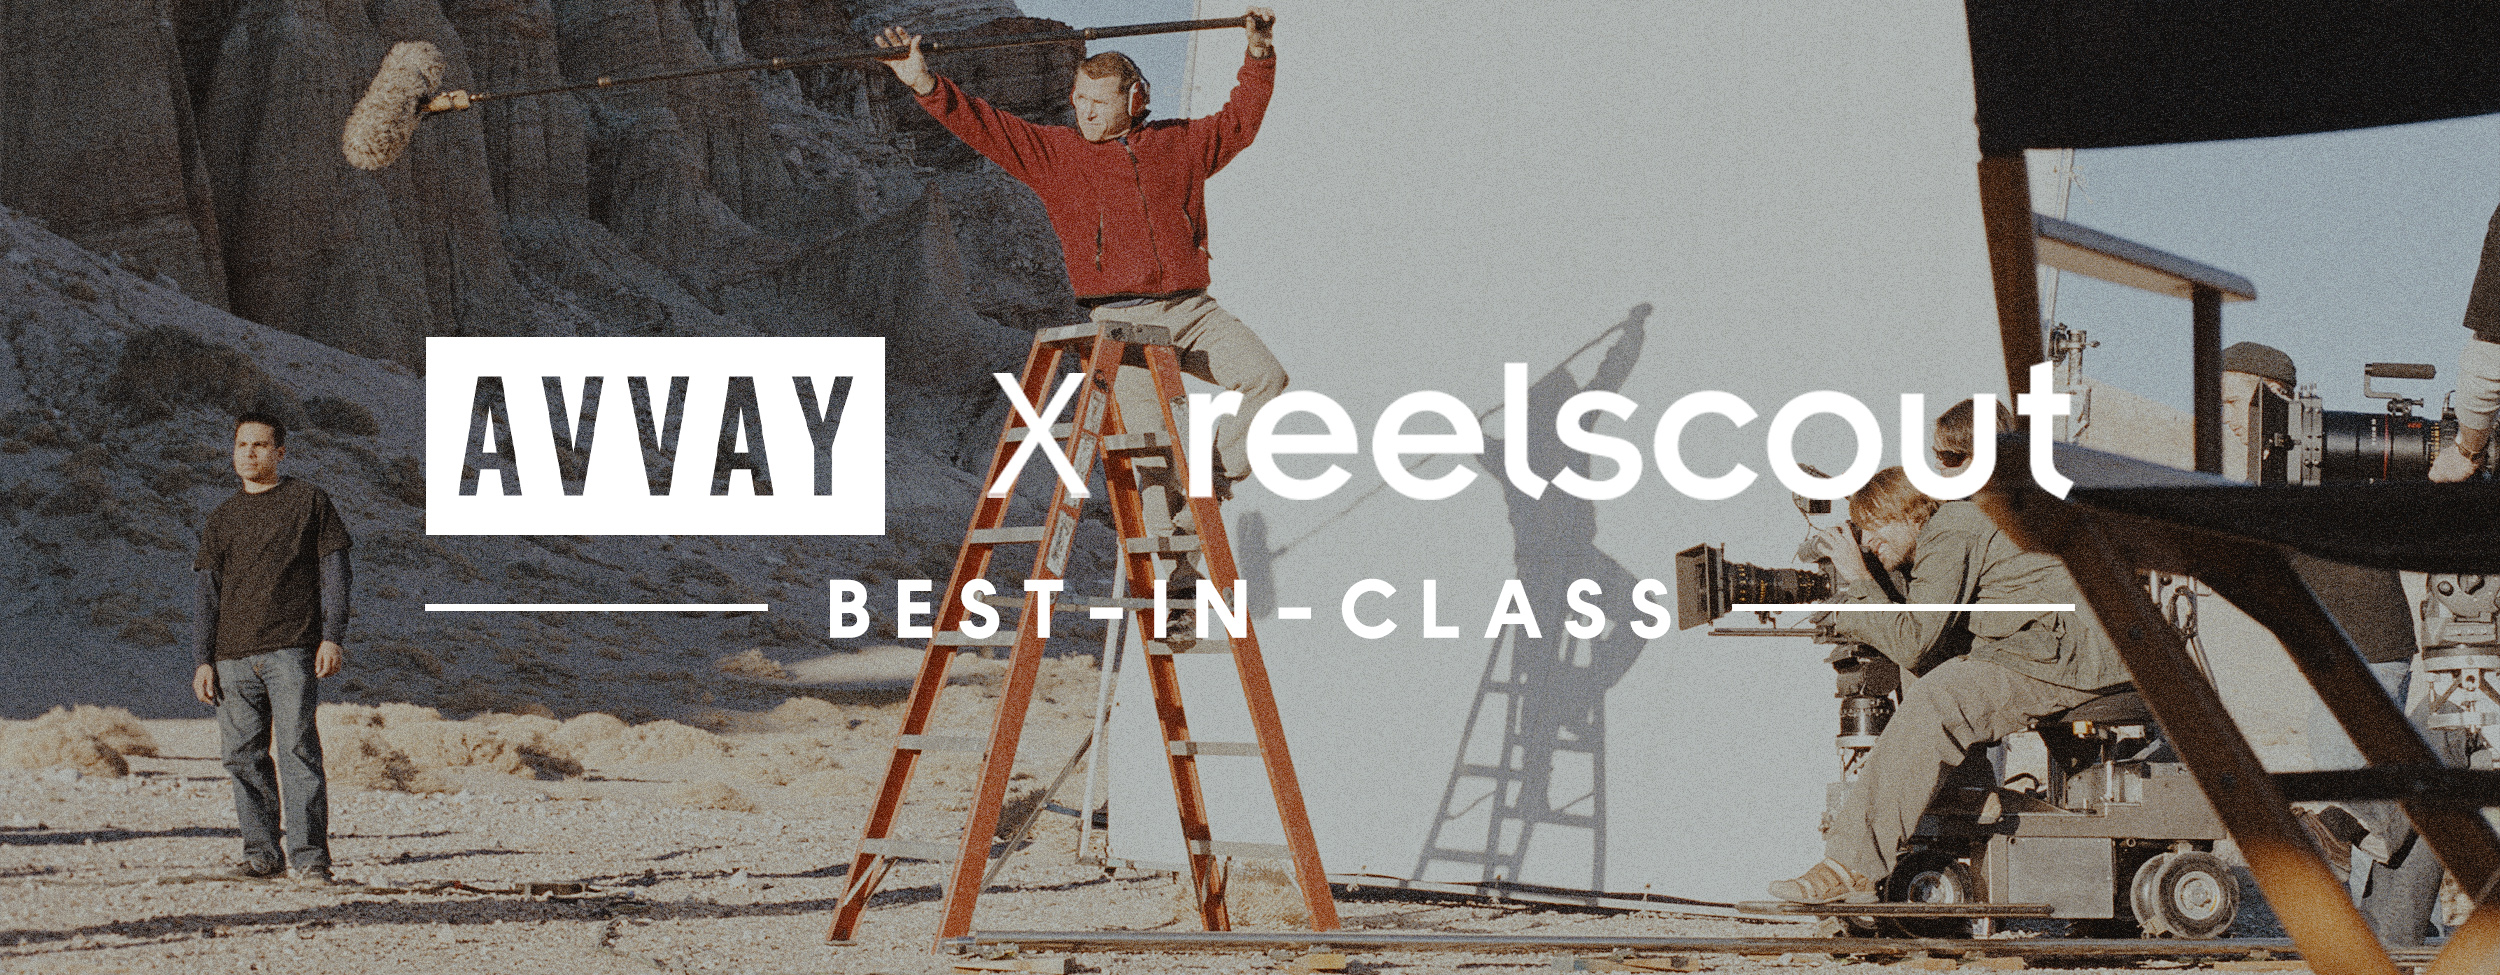 Best Photographers in Los Angeles: AVVAY X Reel-Scout Best In Class